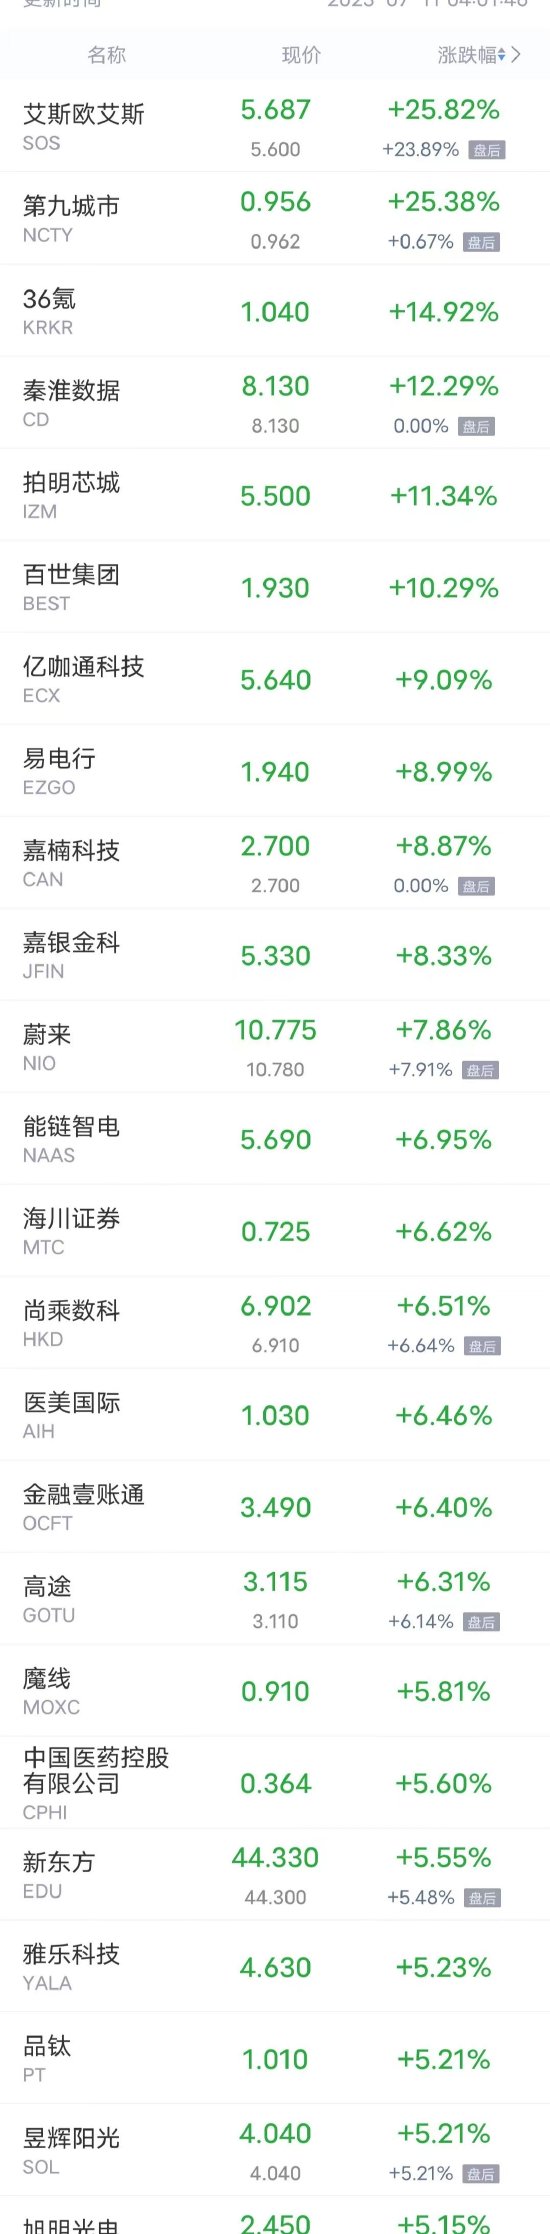 周一热门中概股多数上涨 秦淮数据涨超12% 蔚来涨超7%